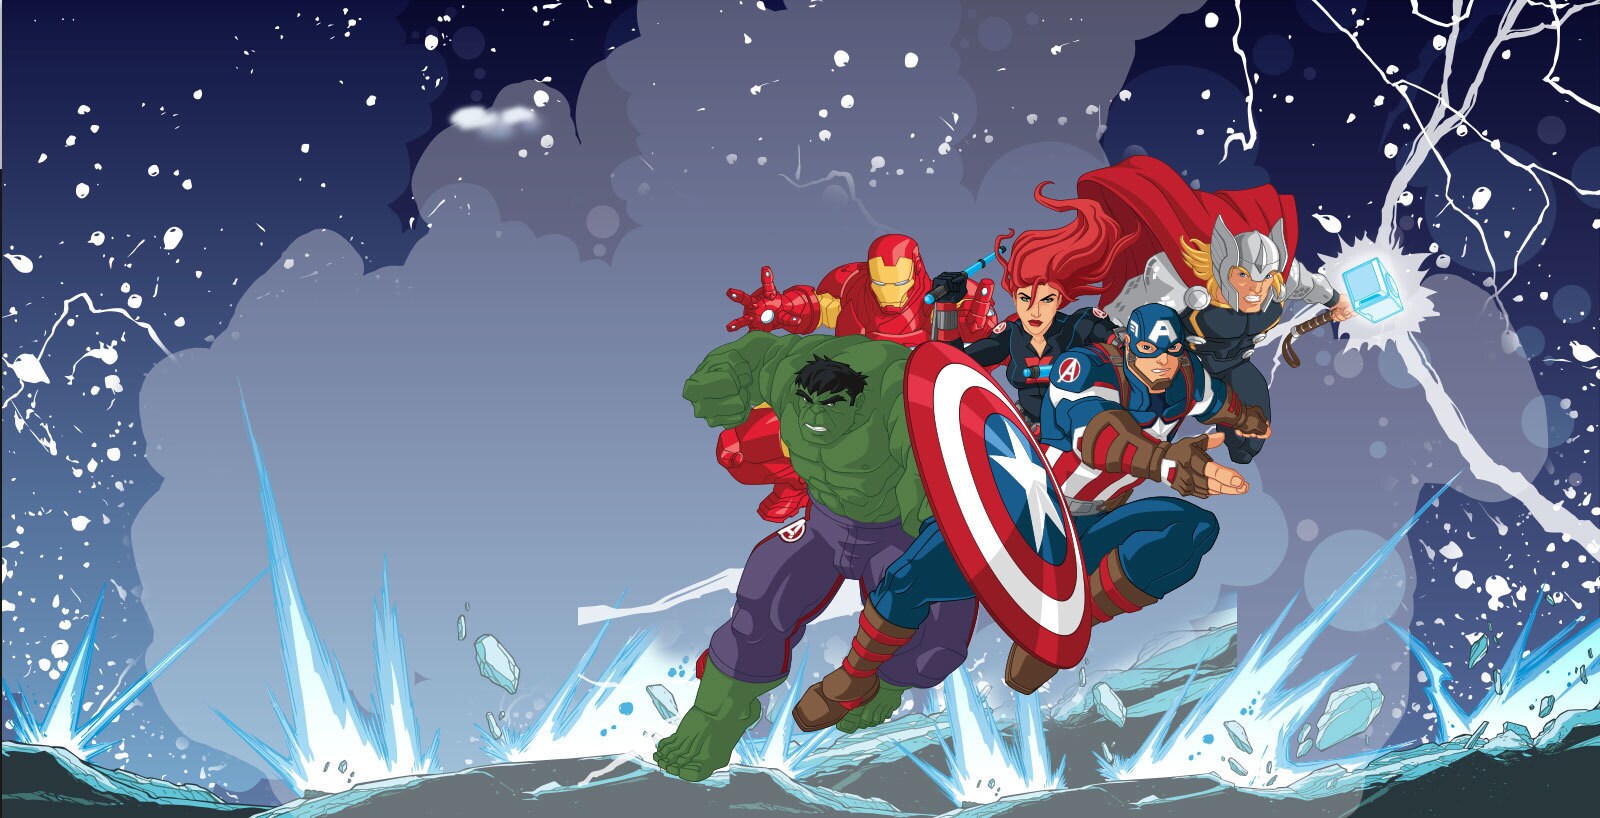 Avengers Cartoons | Avengers | Marvel HQ